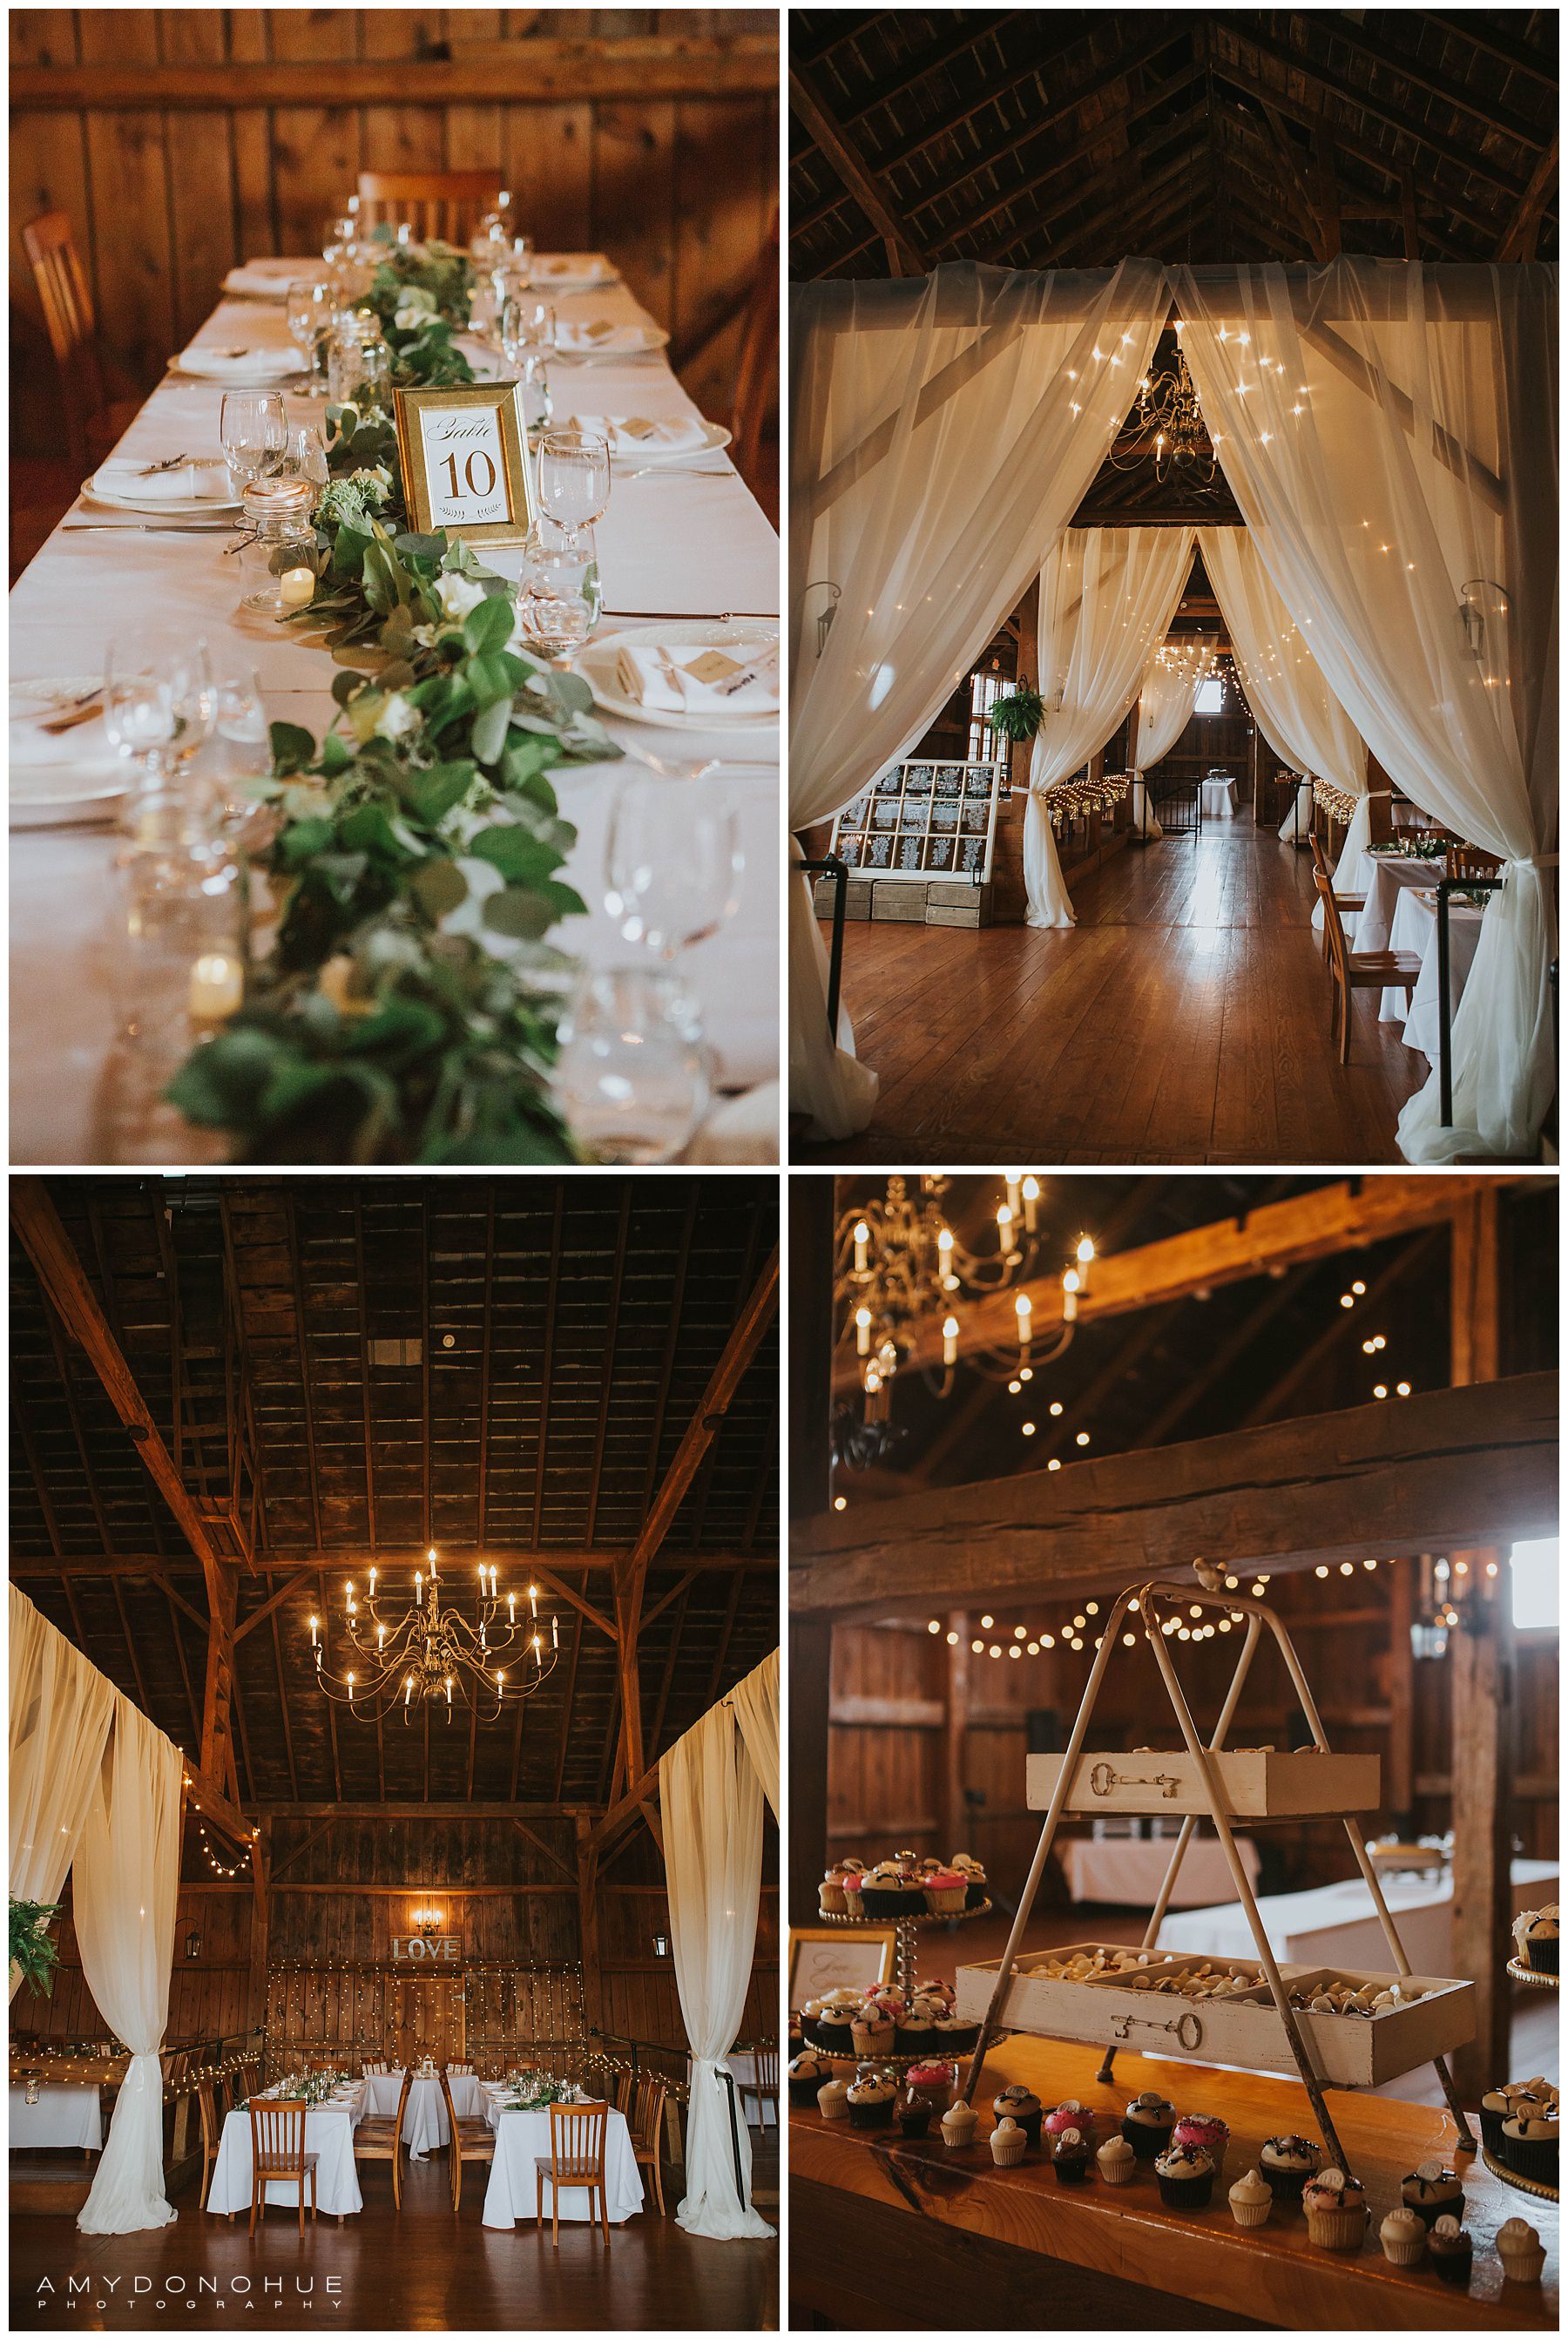 Wedding Reception Venue | The Barn at Boyden Farms | Vermont Wedding Photographer | © Amy Donohue Photography